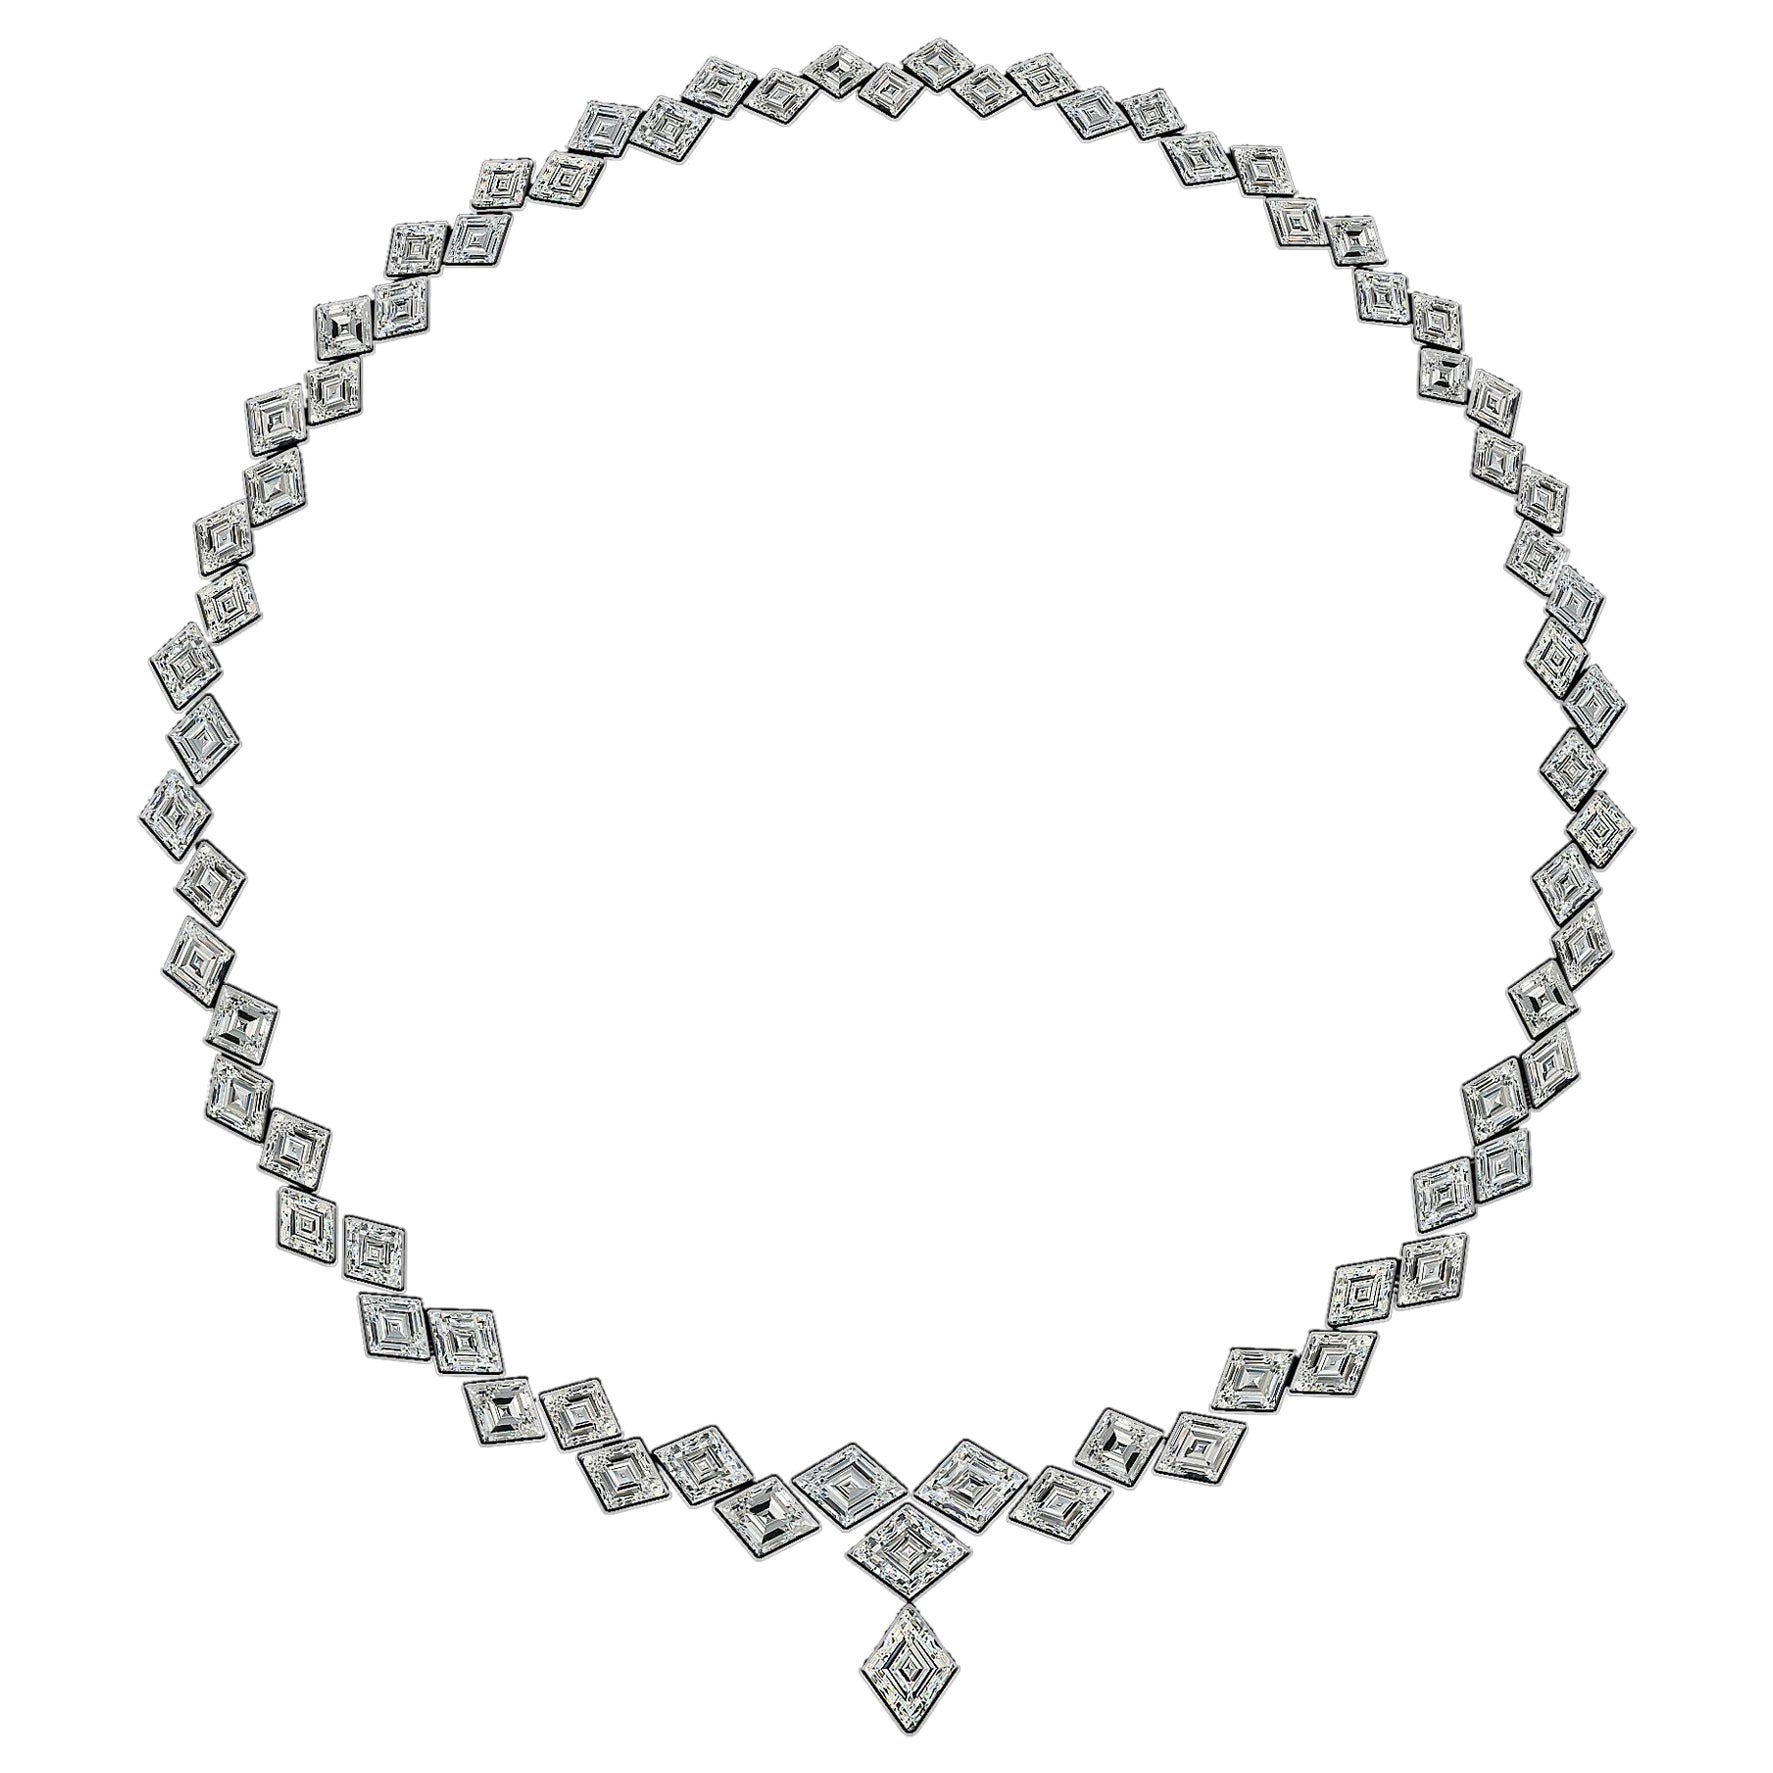 Emilio Jewelry Gia zertifizierte 39.00 Karat Diamant-Halskette in Kite-Form